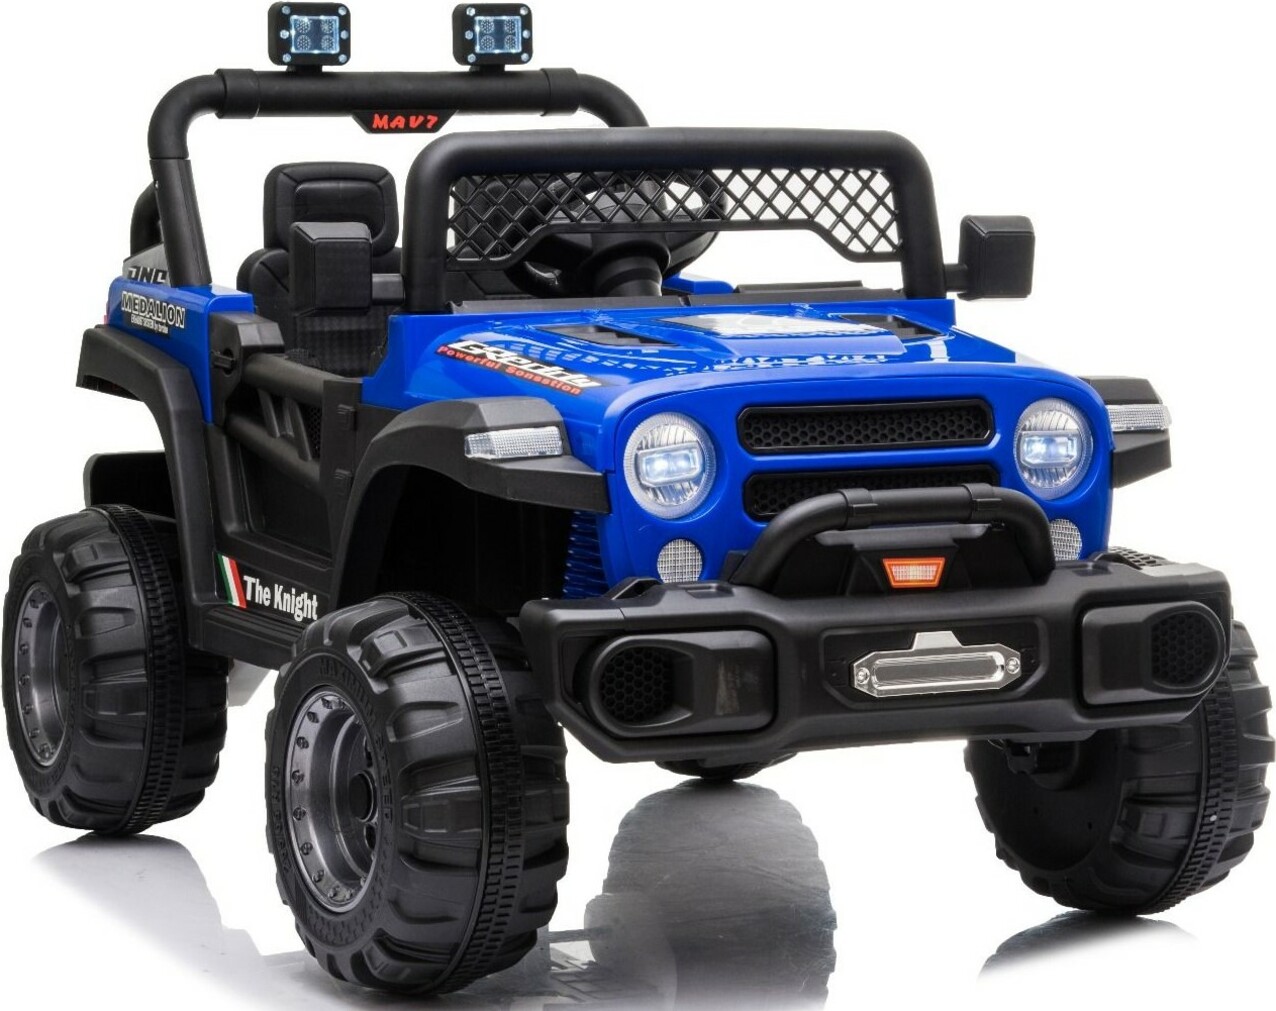 Elektrické autíčko All Ride s pohonem zadních kol, modré, 12V baterie, Vysoký podvozek